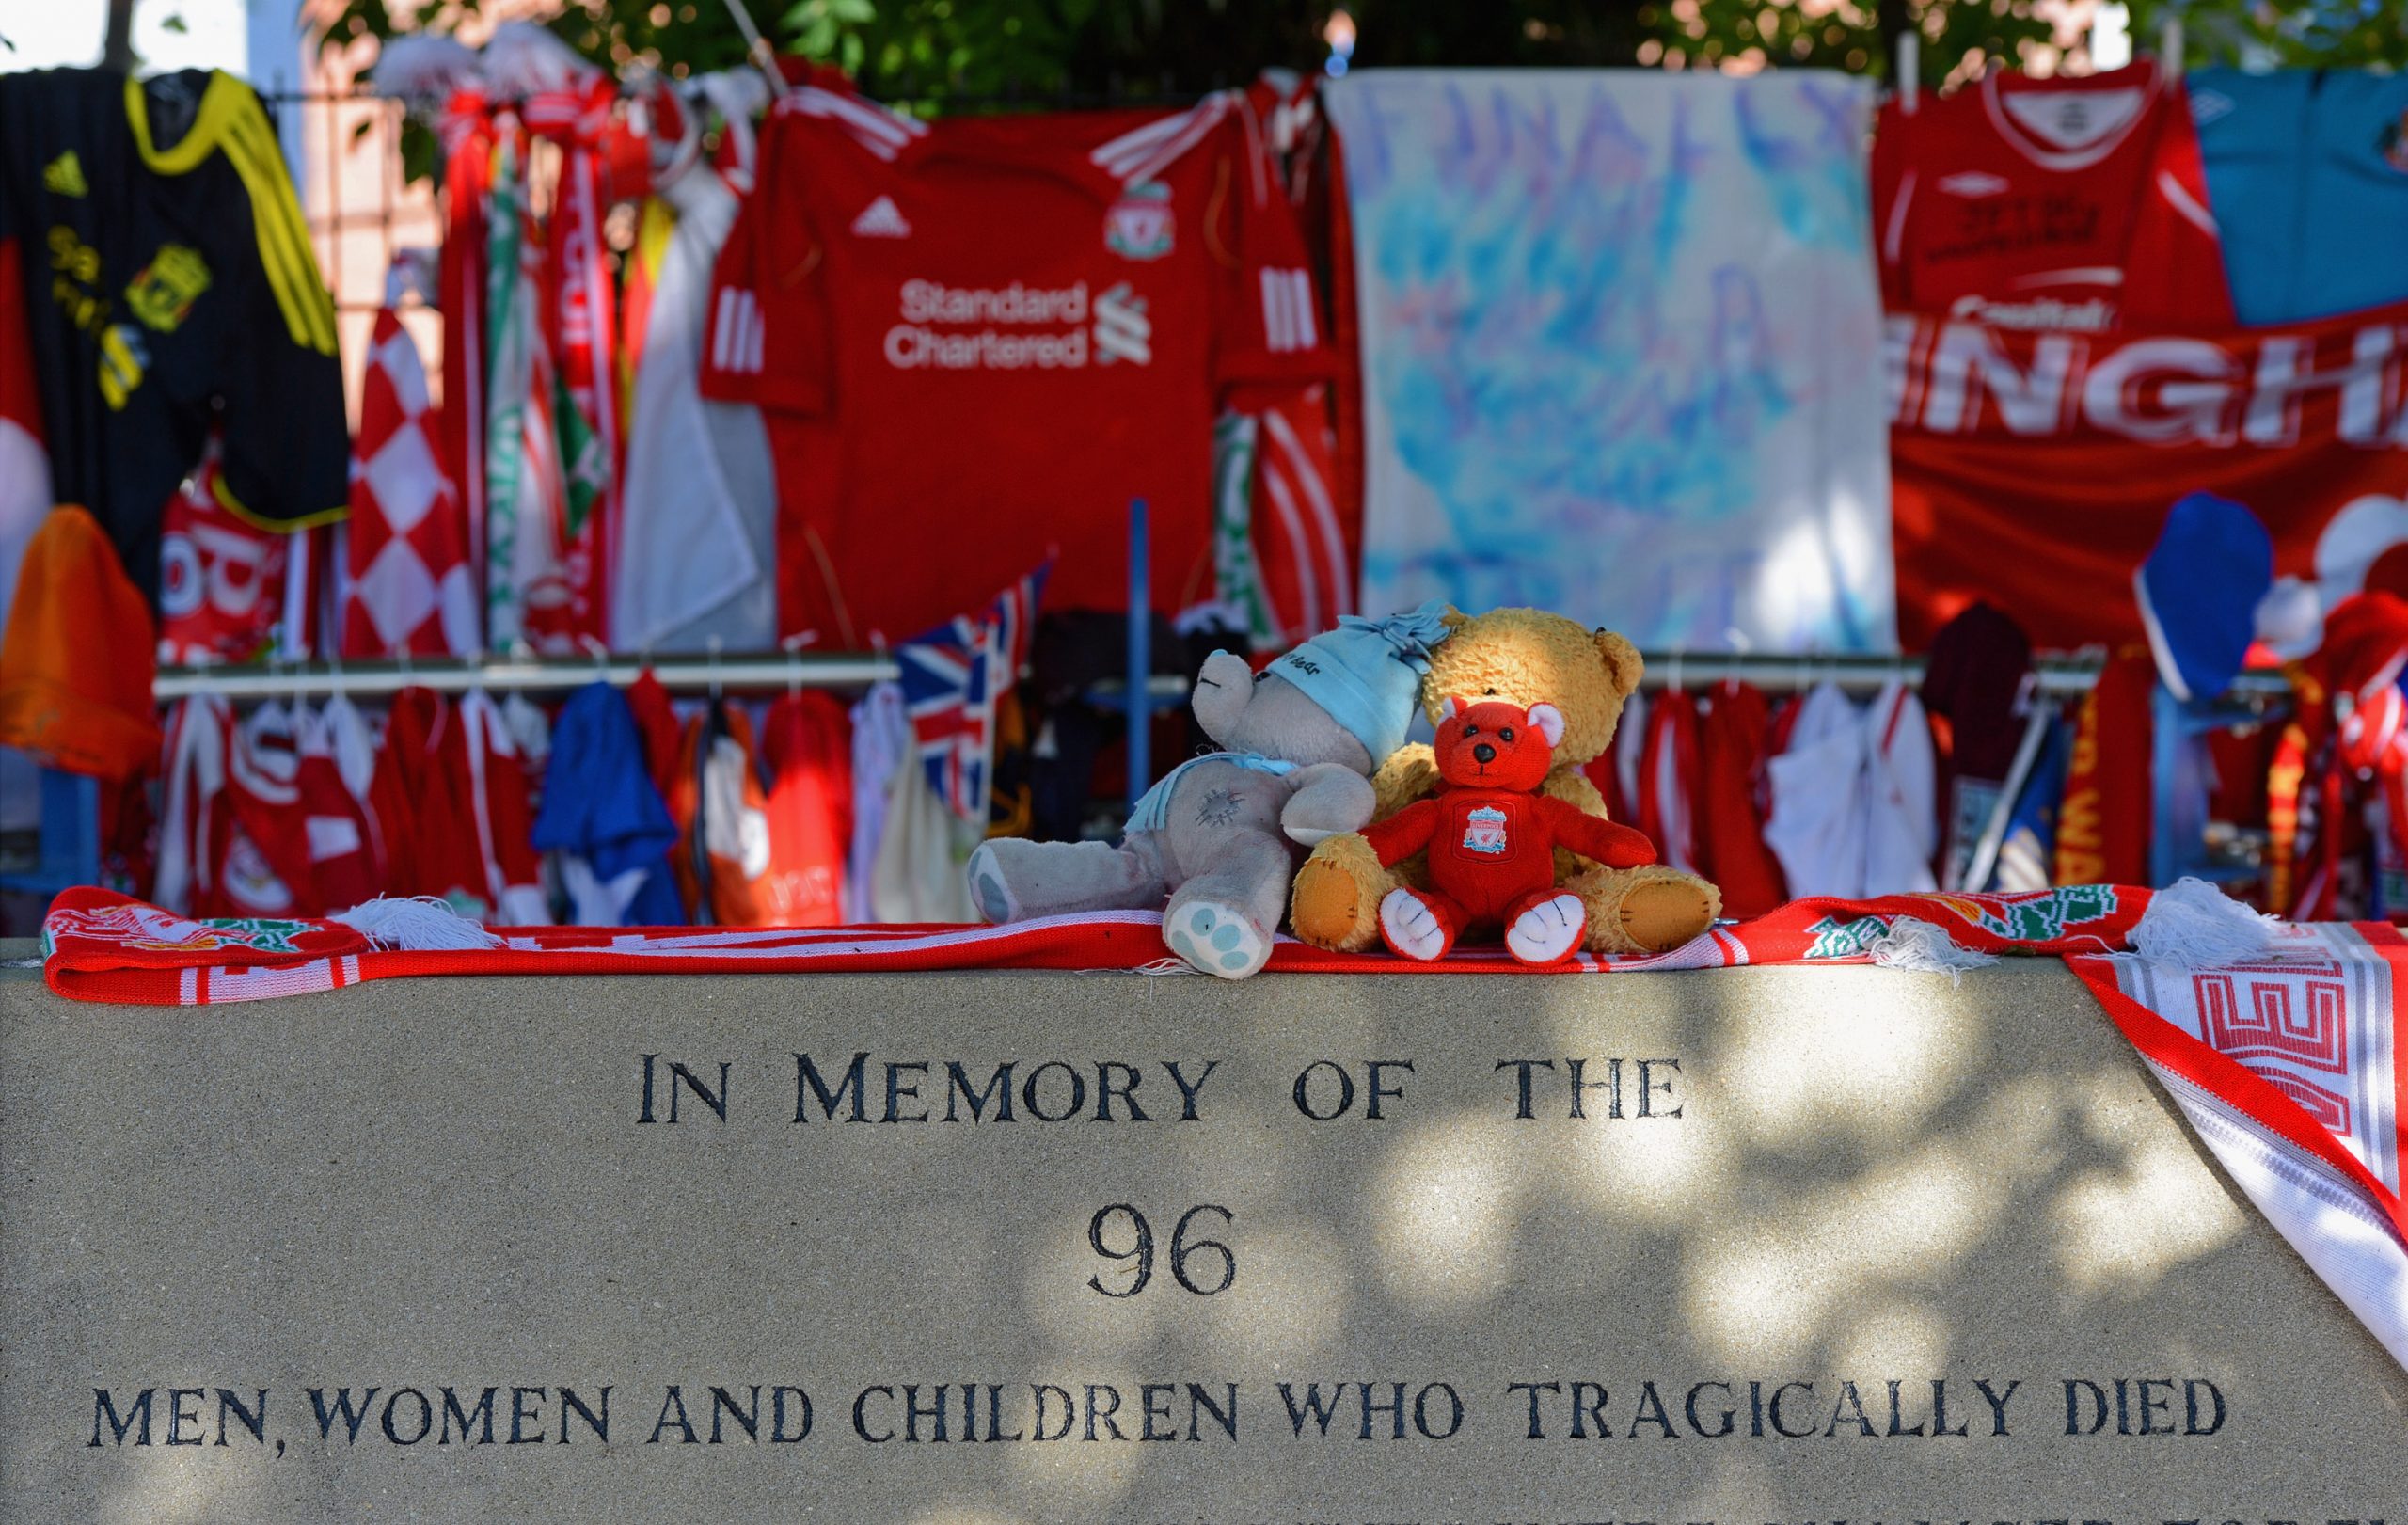 Hillsborough, a 31 años de la tragedia que cambió para siempre el futbol inglés